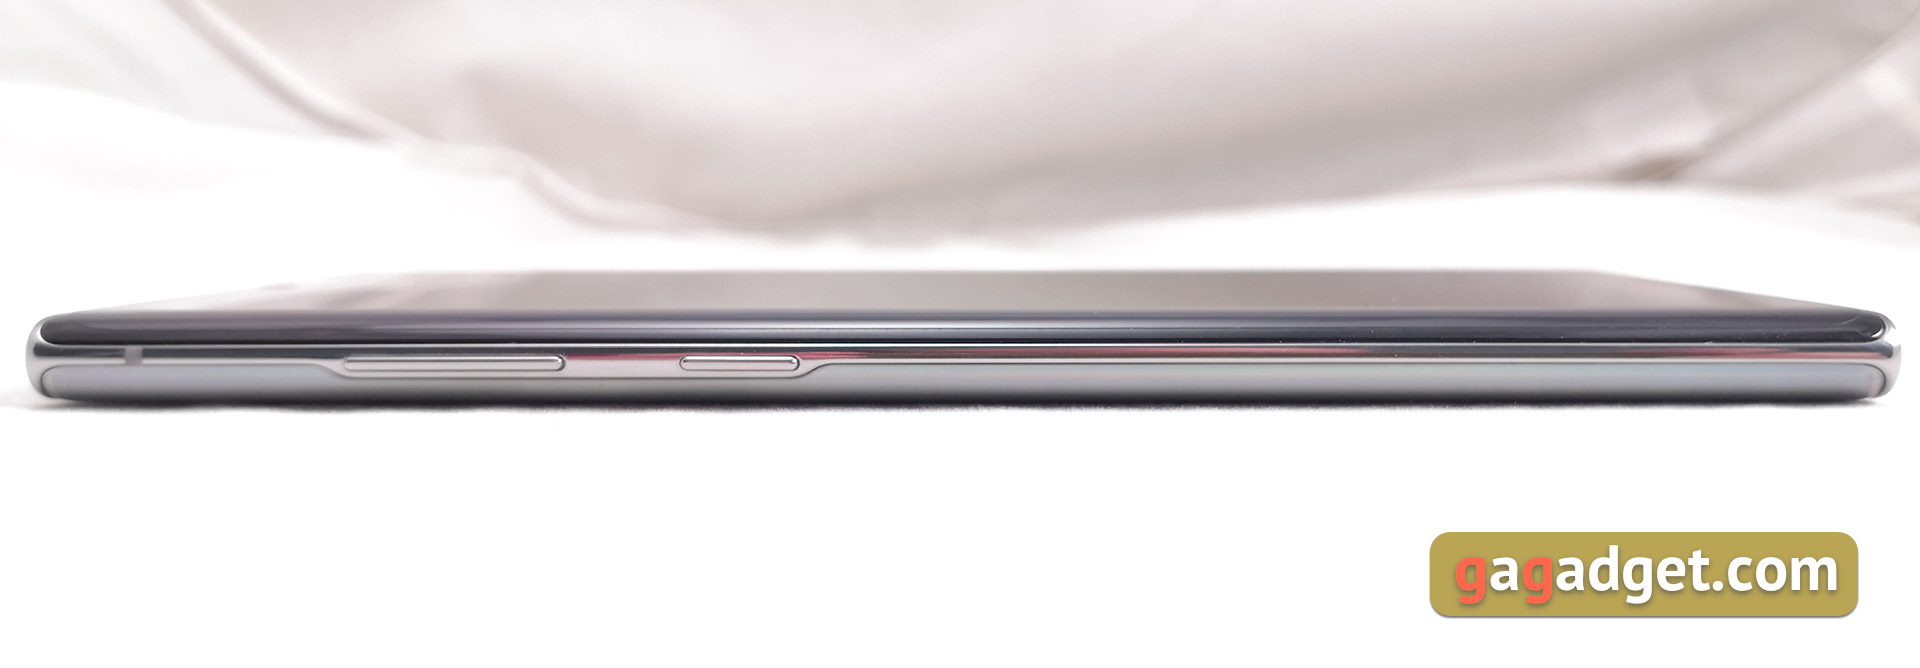 Огляд Samsung Galaxy Note10 +: найбільший та найтехнологічніший флагман на Android-6